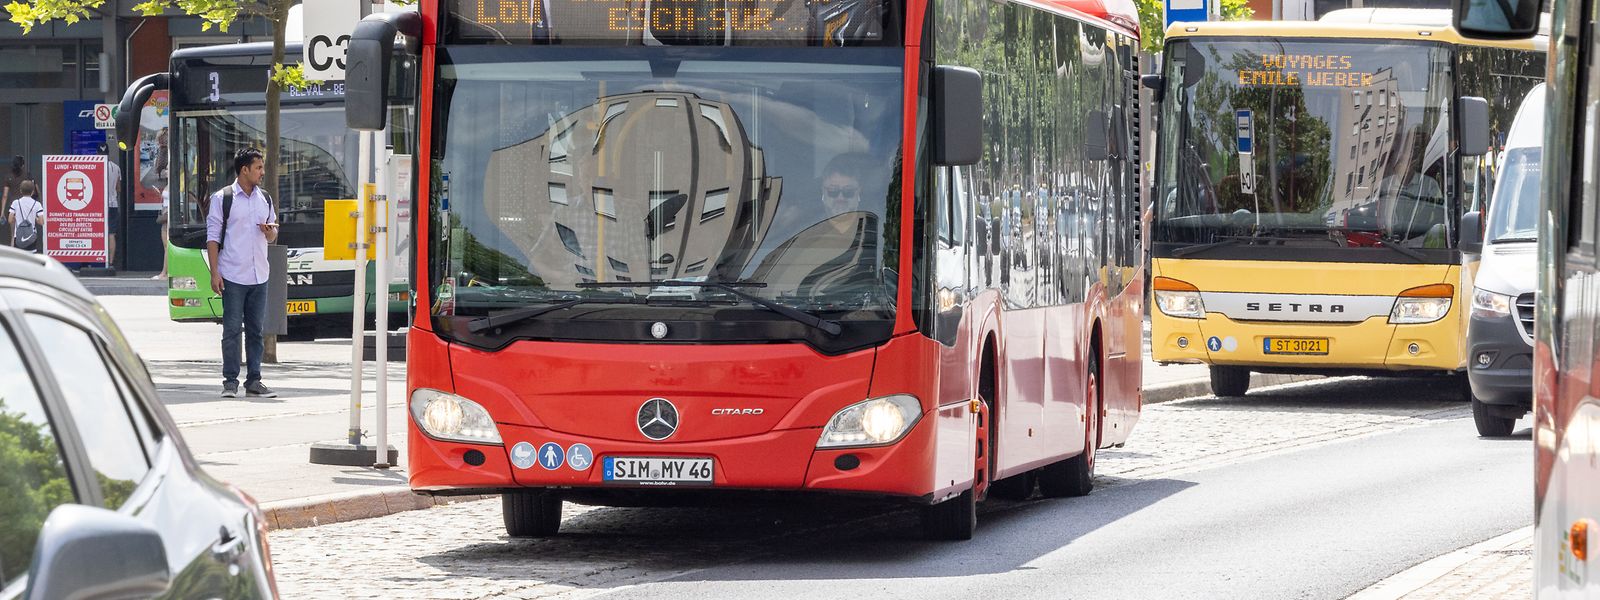 Dieser Bus kommt aus Simmern im Rhein-Hunsrück-Kreis und fährt in Esch/Alzette.